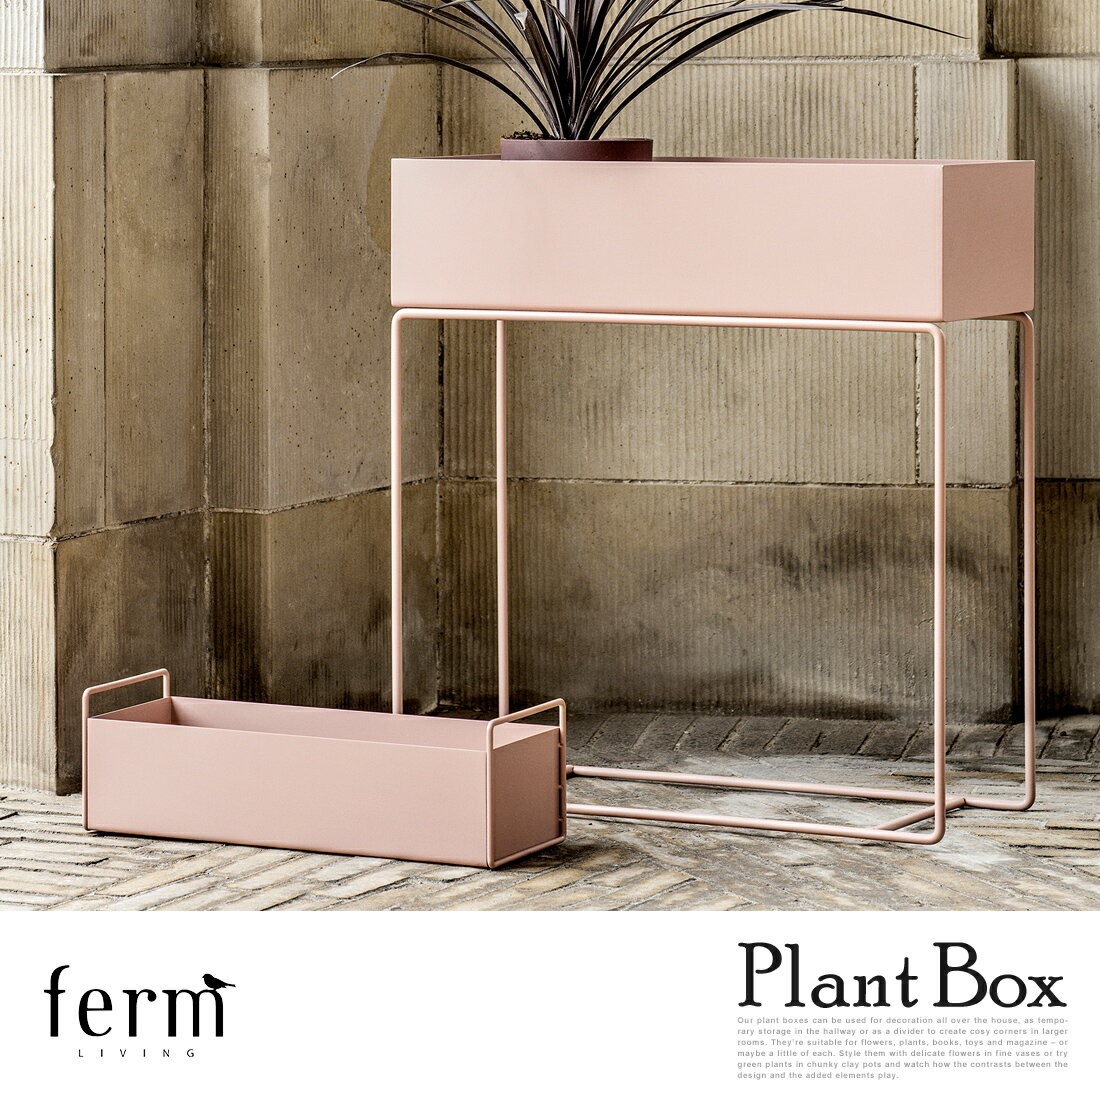 ferm LIVING ファームリビング Plant Boxプラントボックス 植木鉢 観葉